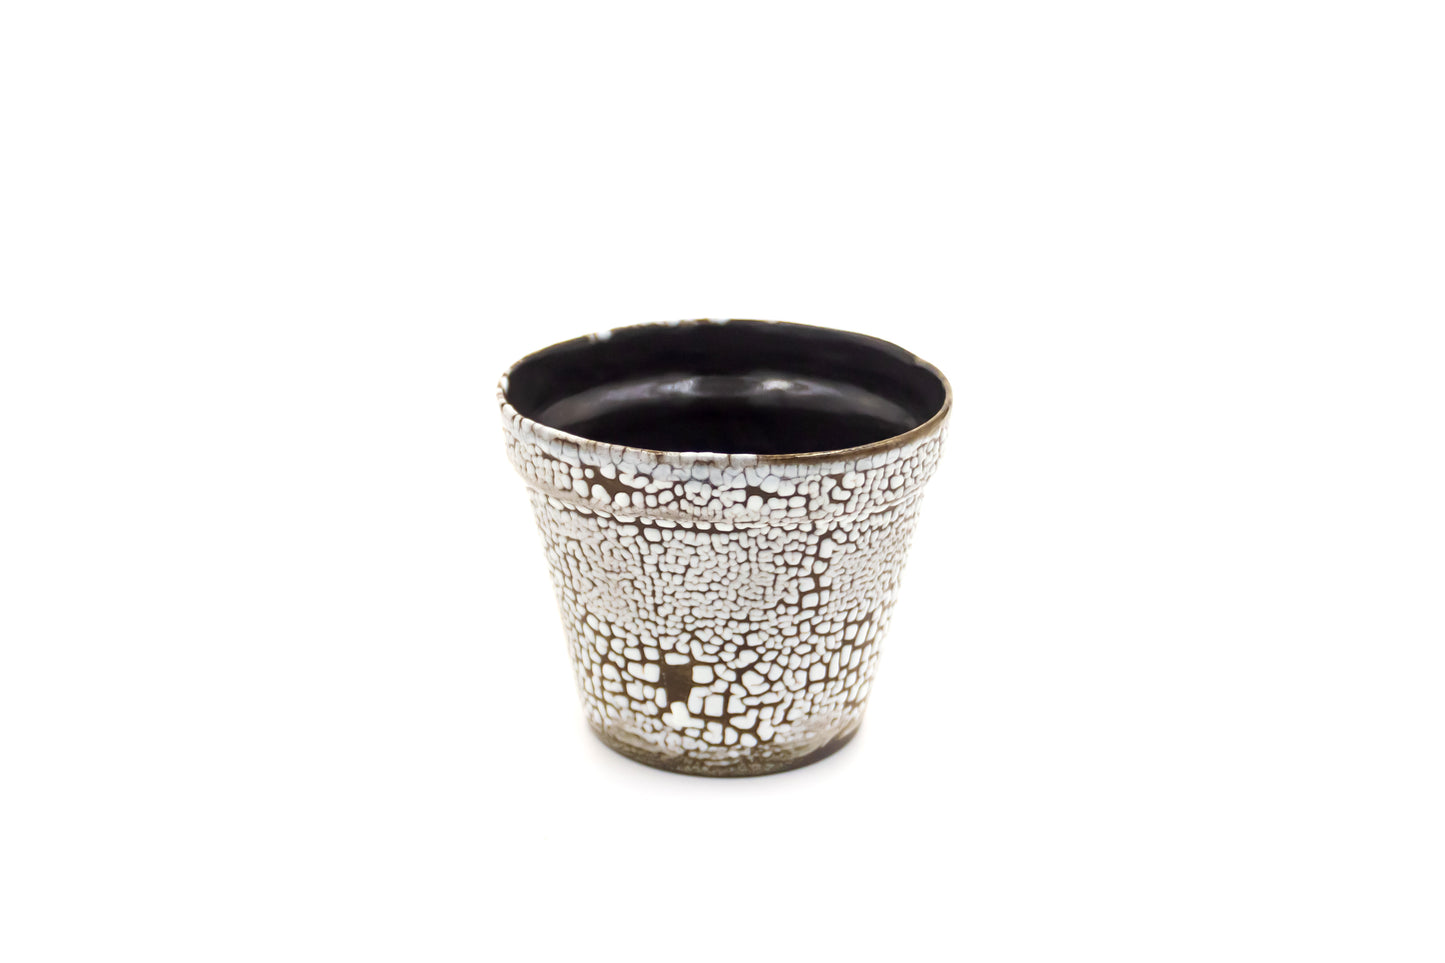 Mała osłonka ceramiczna w kolorze czarno-białym